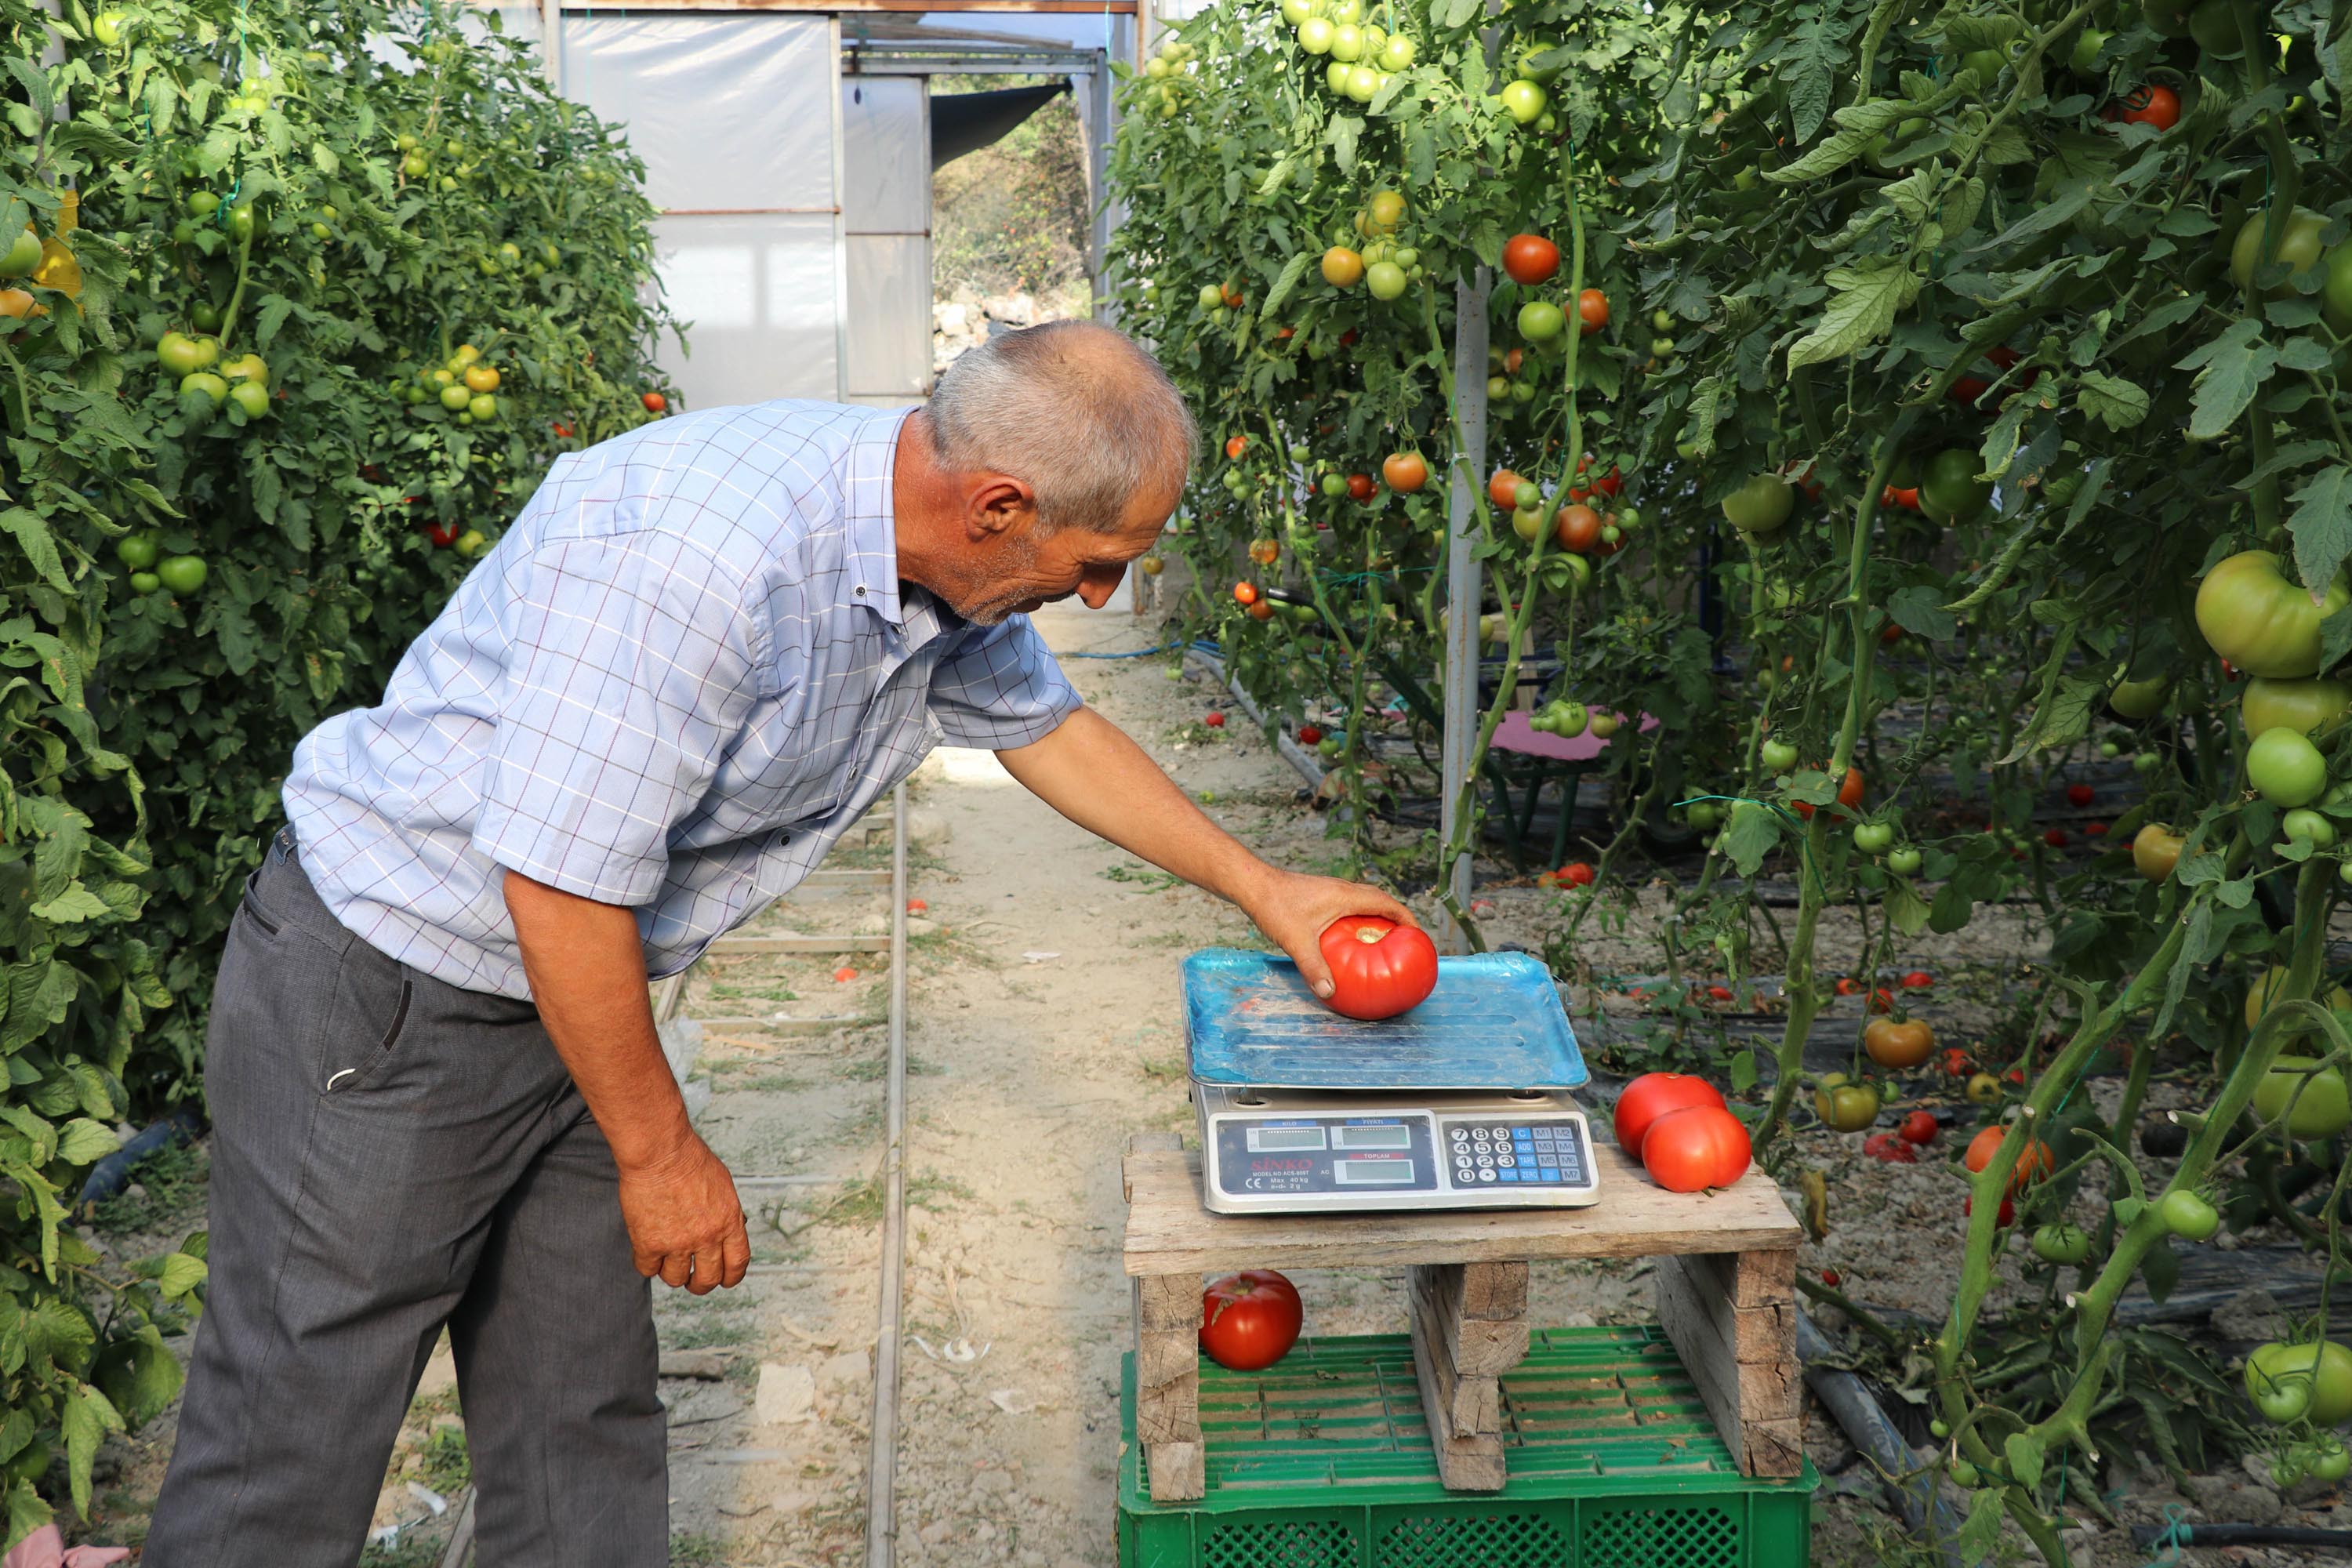 bombus-arilari-kullanilarak-yetistirilen-domateslerin-tanesi-1-kilo-geliyor-4707-dhaphoto3.jpg